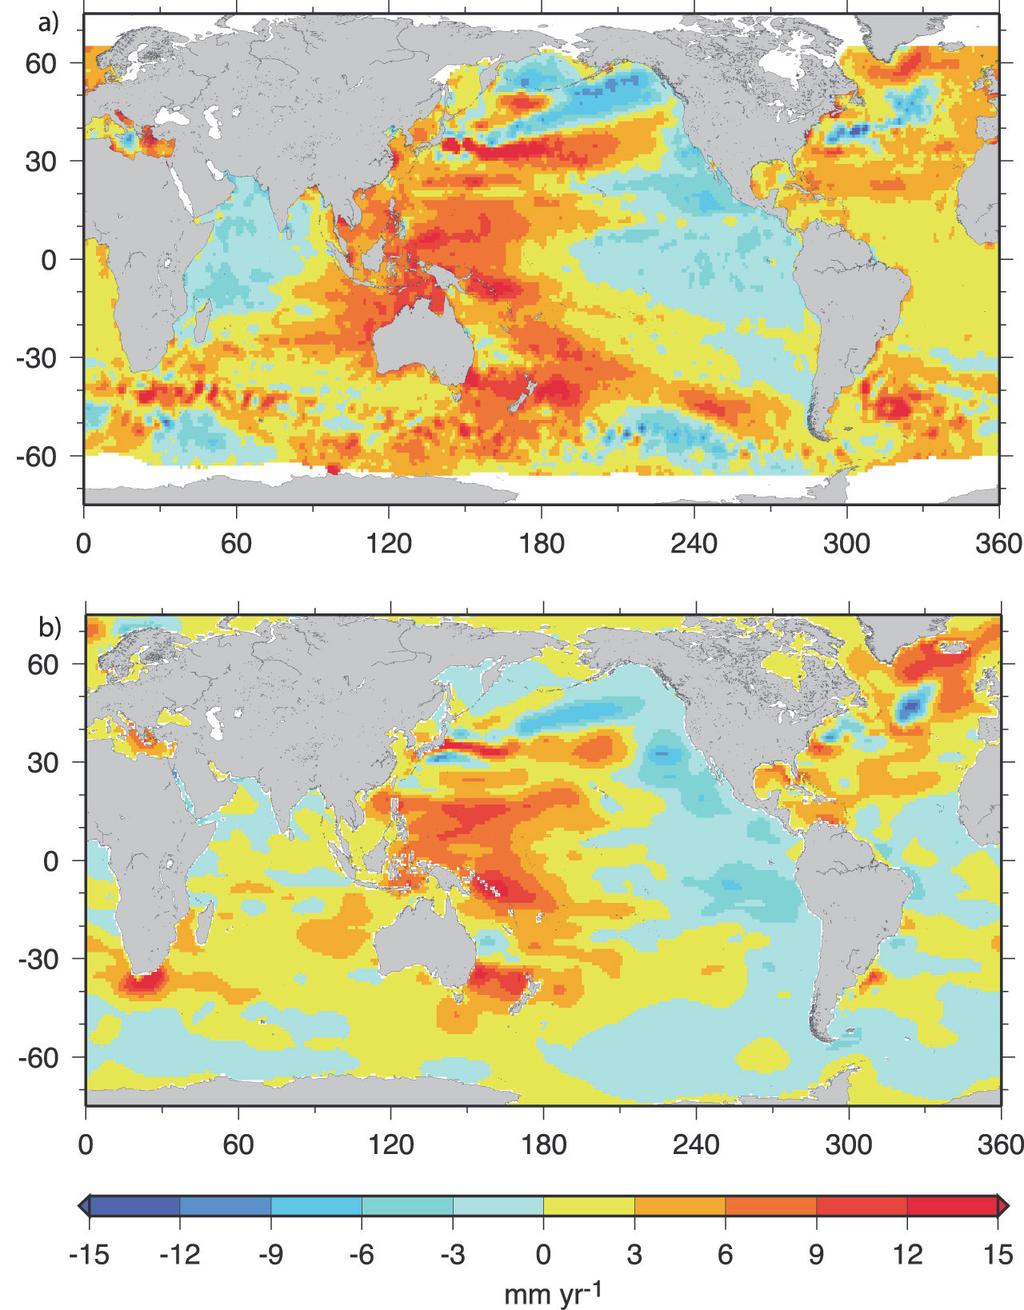 전체 해양에 대한 영향으로 수온상승에 따른 열용량의 증가와 순환계의 변화를 들 수 있다 해양에서의 열용량 증가는 급격해진 전지구적 물순환과 더불어 해양에 의해 기인된 악기상 빈도와 강도의 변동으로 나타날 가능성이 있다 황해에서부터 발달된 비구름에 의한 한반도의 국지적 폭우나 수퍼태풍 발생의 가능성이 제시되는 것은 이러한 변화에 근거한다 순환계의 변화는